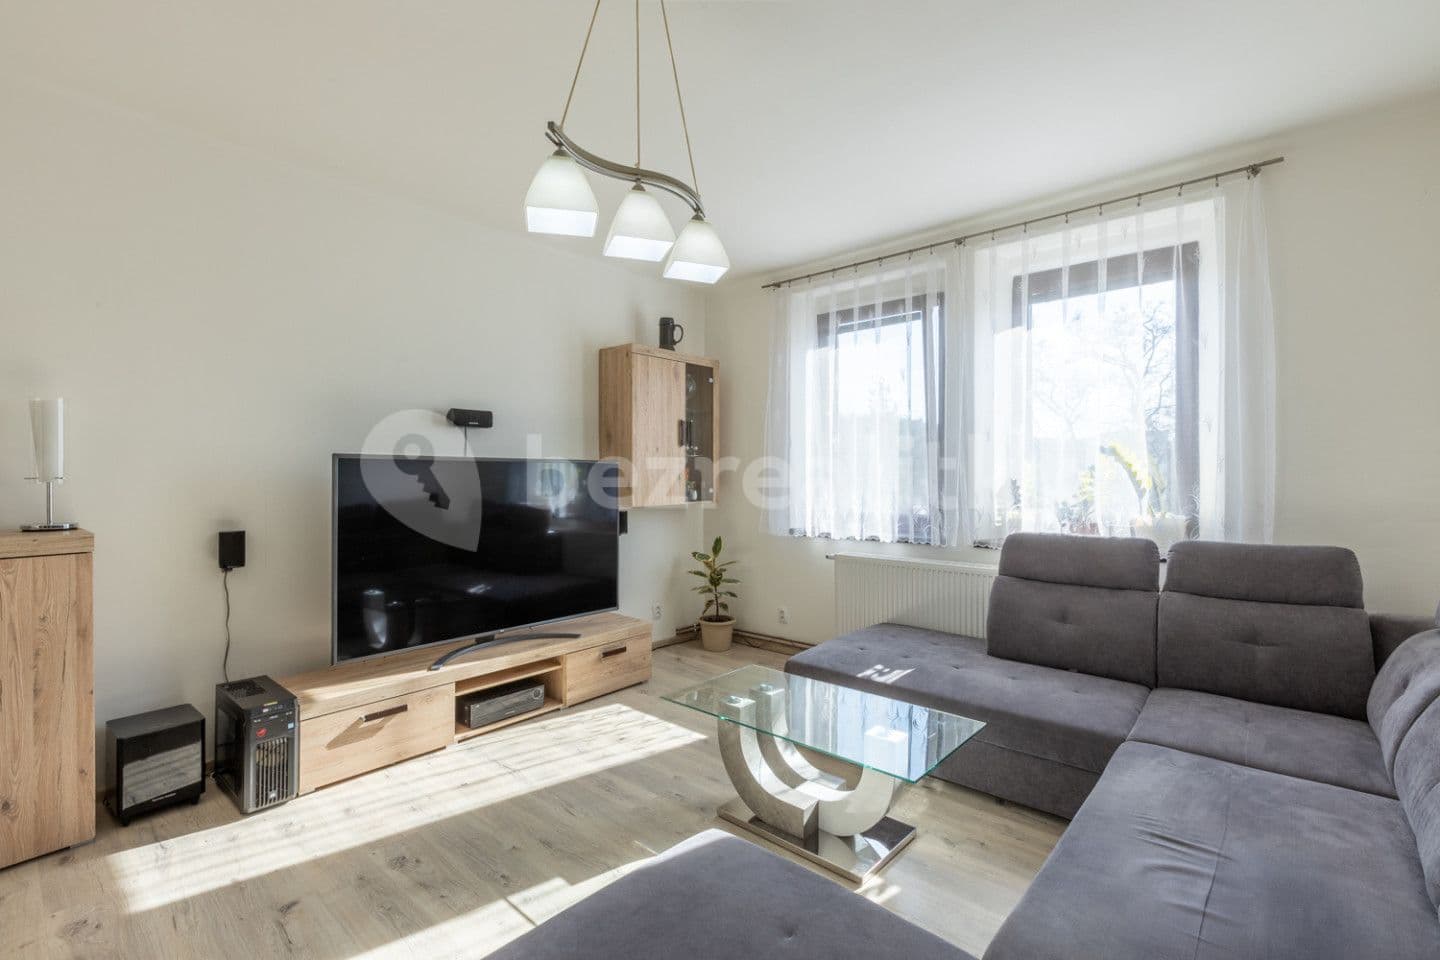 2 bedroom flat for sale, 85 m², Šamotka, Rakovník, Středočeský Region